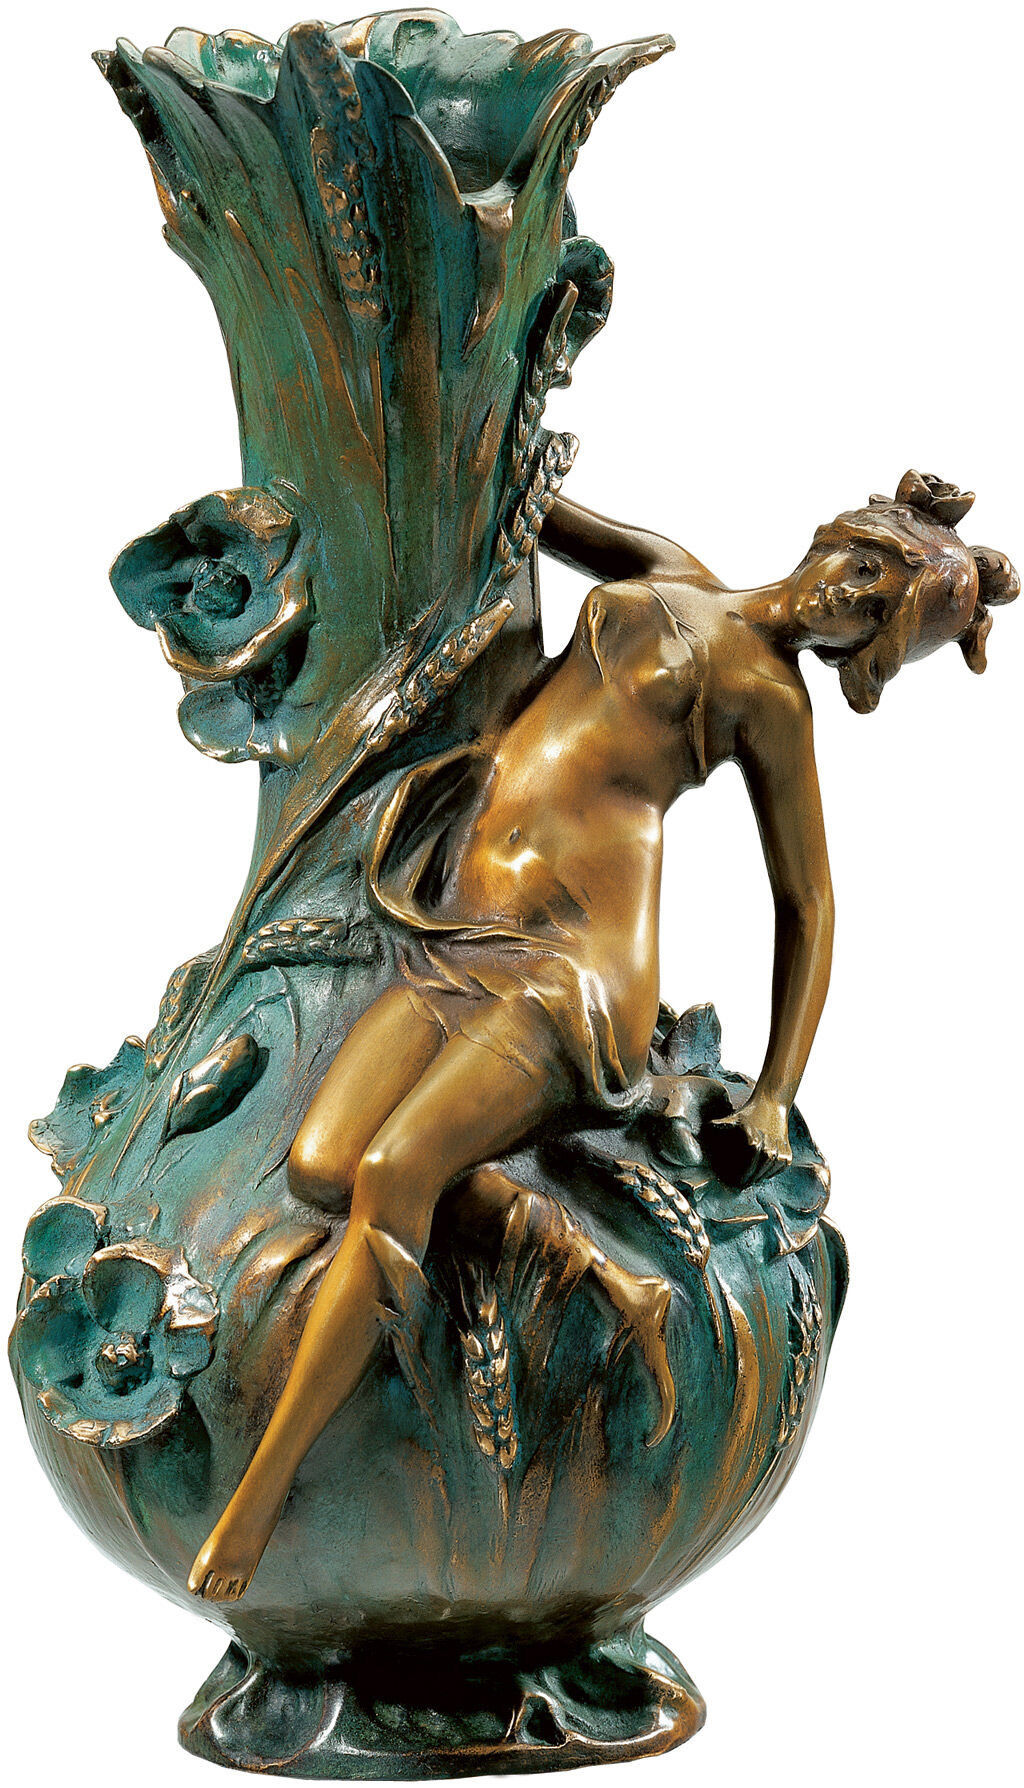 Vase "Coquelicot", bronze version (antique green) by Louis Auguste Moreau